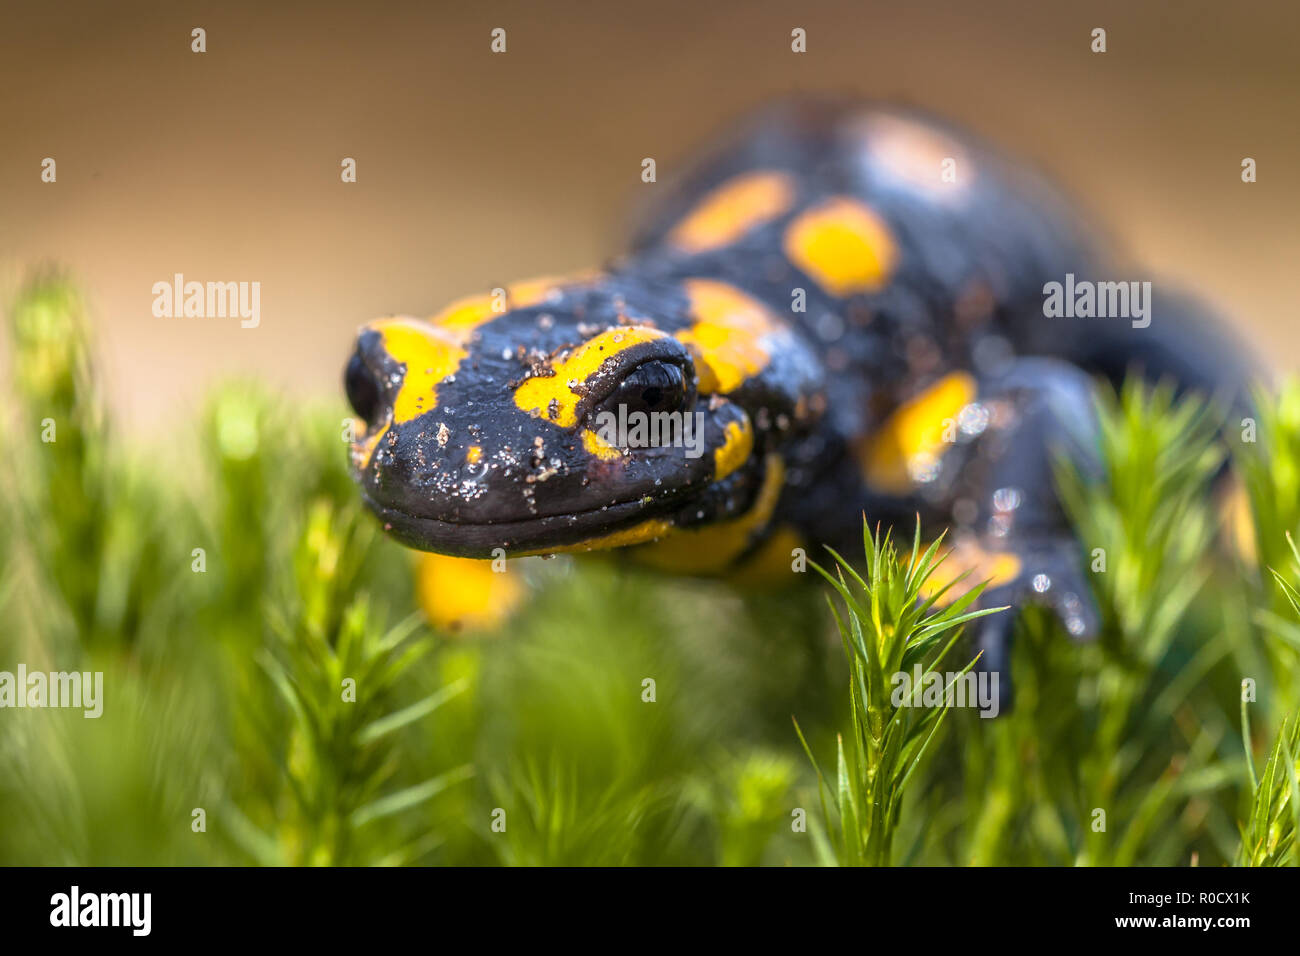 Les salamandres de feu (Salamandre Salamandre) vit dans les forêts de feuillus d'Europe centrale et sont en déclin Banque D'Images